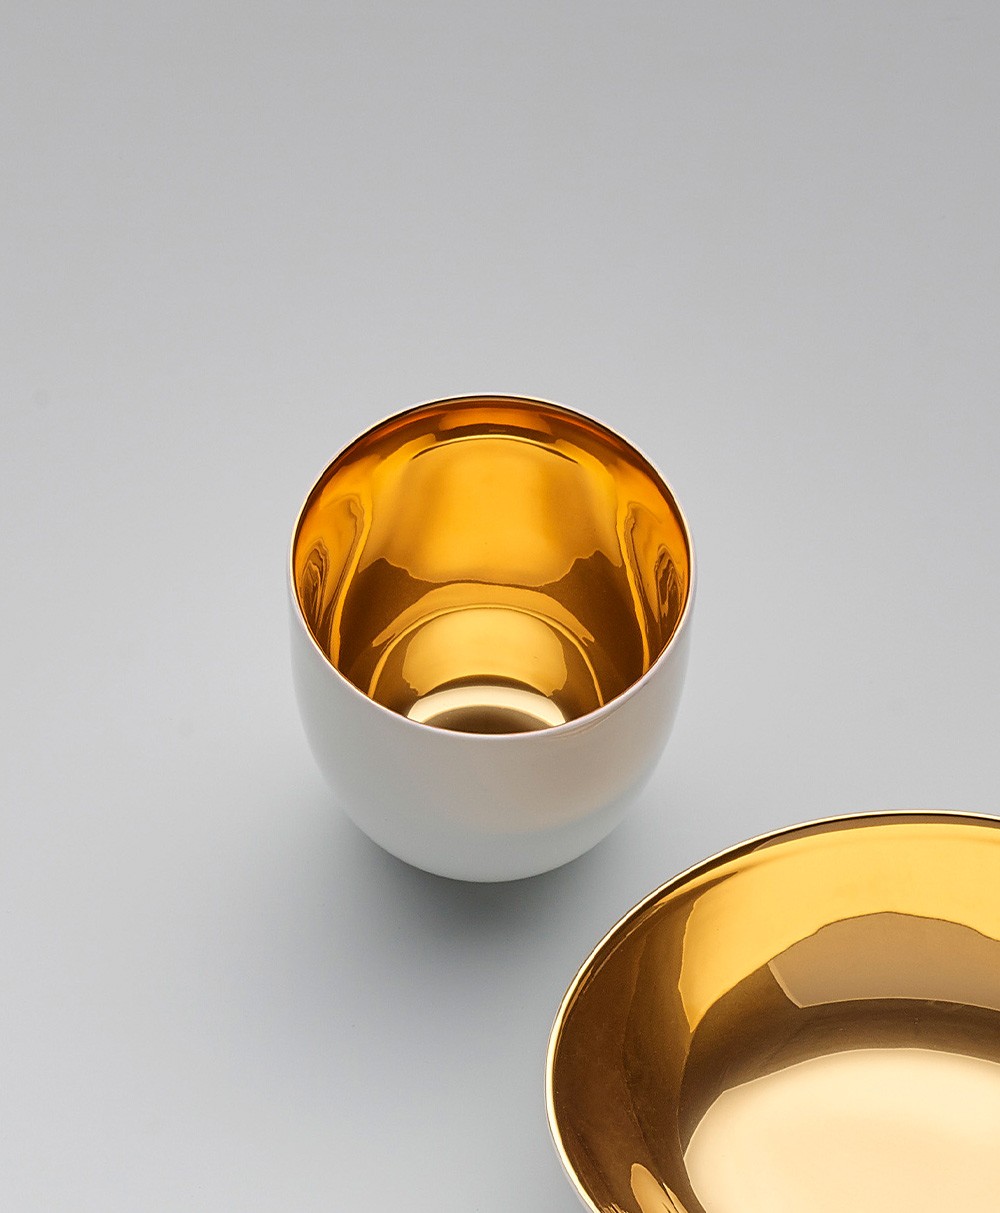 Produktbild der Tassen und Becher der Goldrausch Kollektion von Dibbern - RAUM concept store